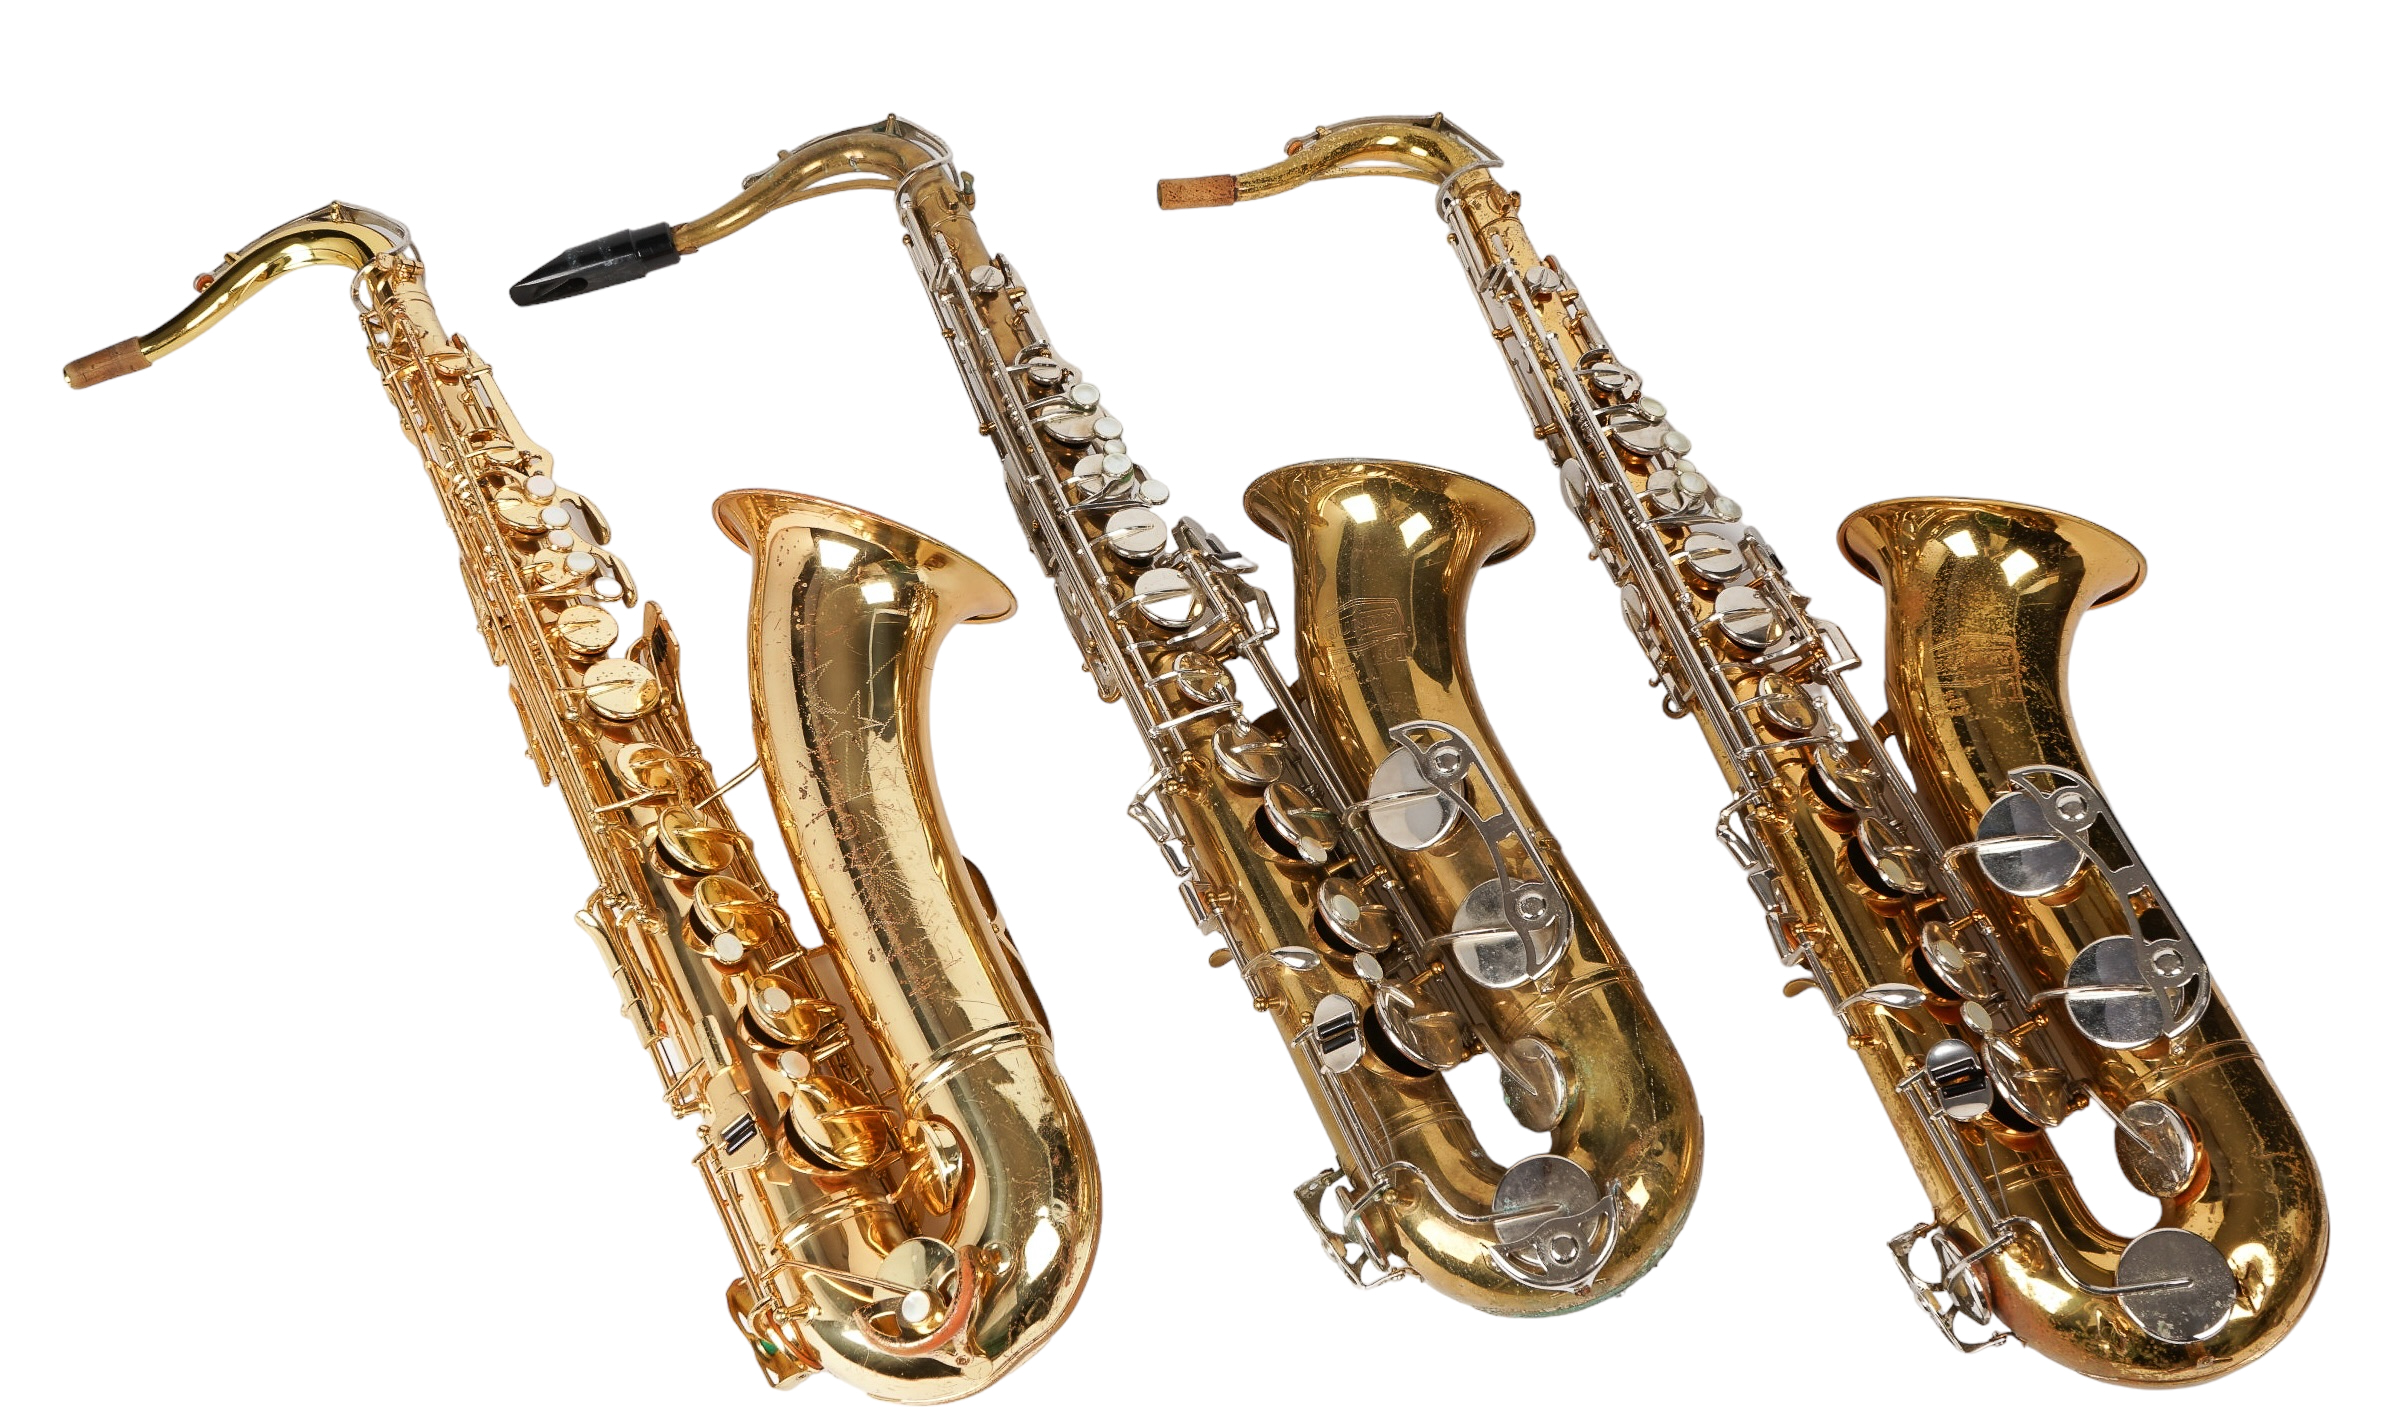  3 Tenor saxophones c o Conn 2e229c